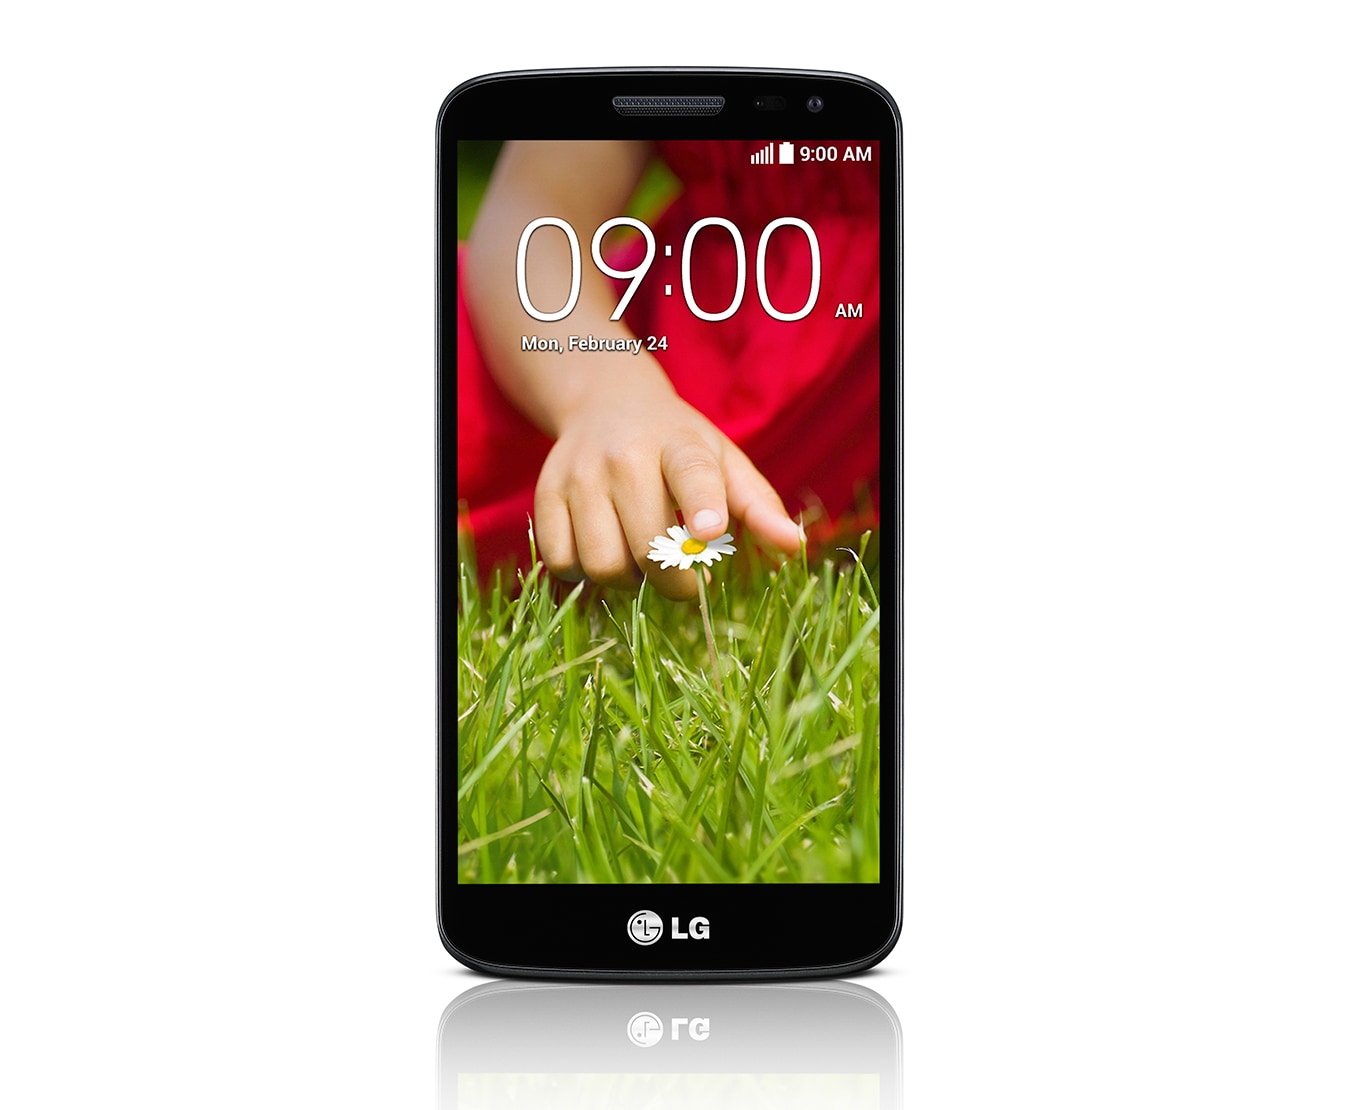 LG G2 mini - El rey de los mini Smartphones